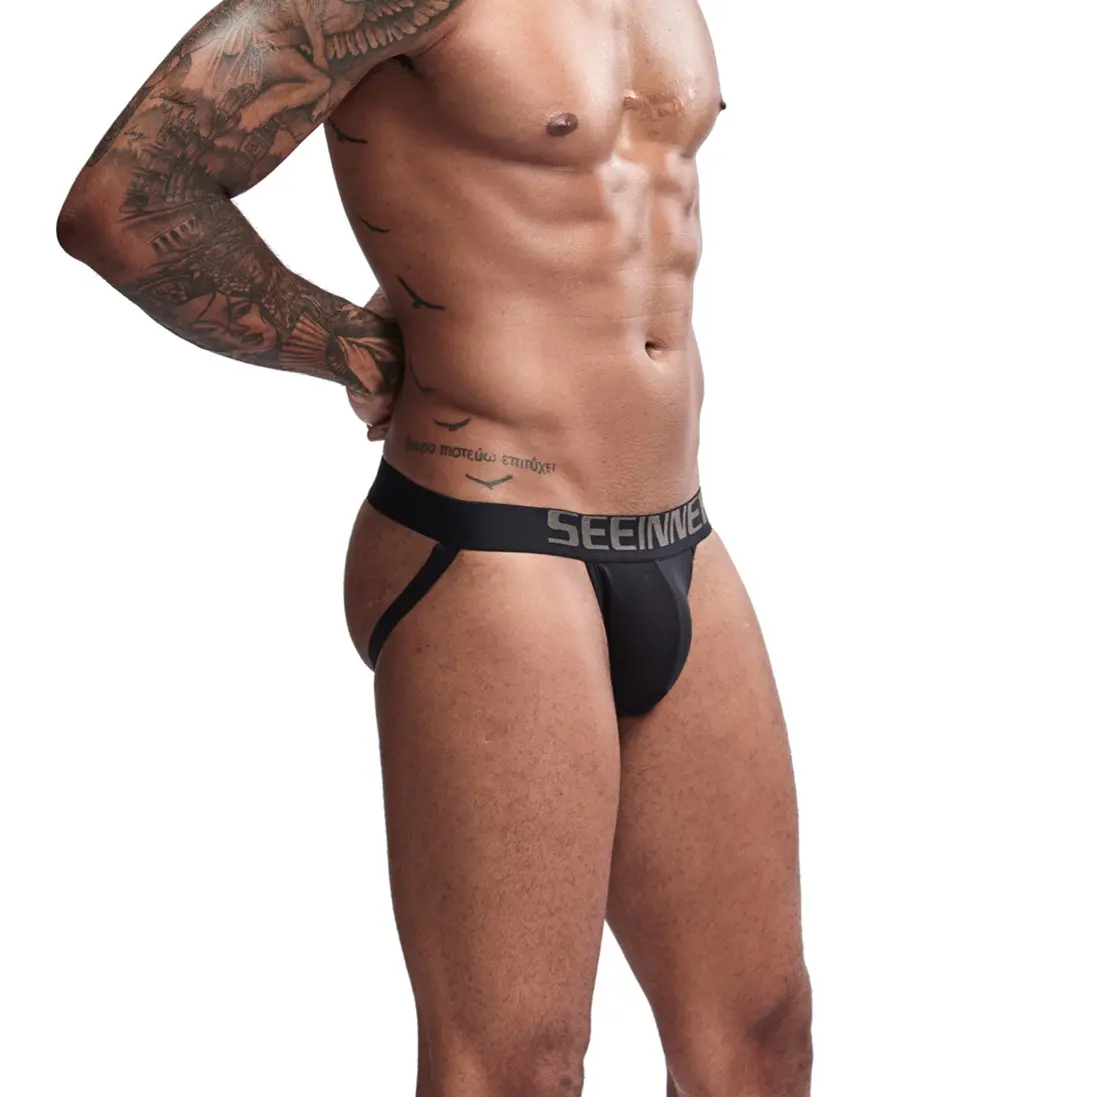 Sadece varış erkek külot pamuk Low-rise Mens iç çamaşırı özel Logo erkek iç çamaşırı Boxer külot